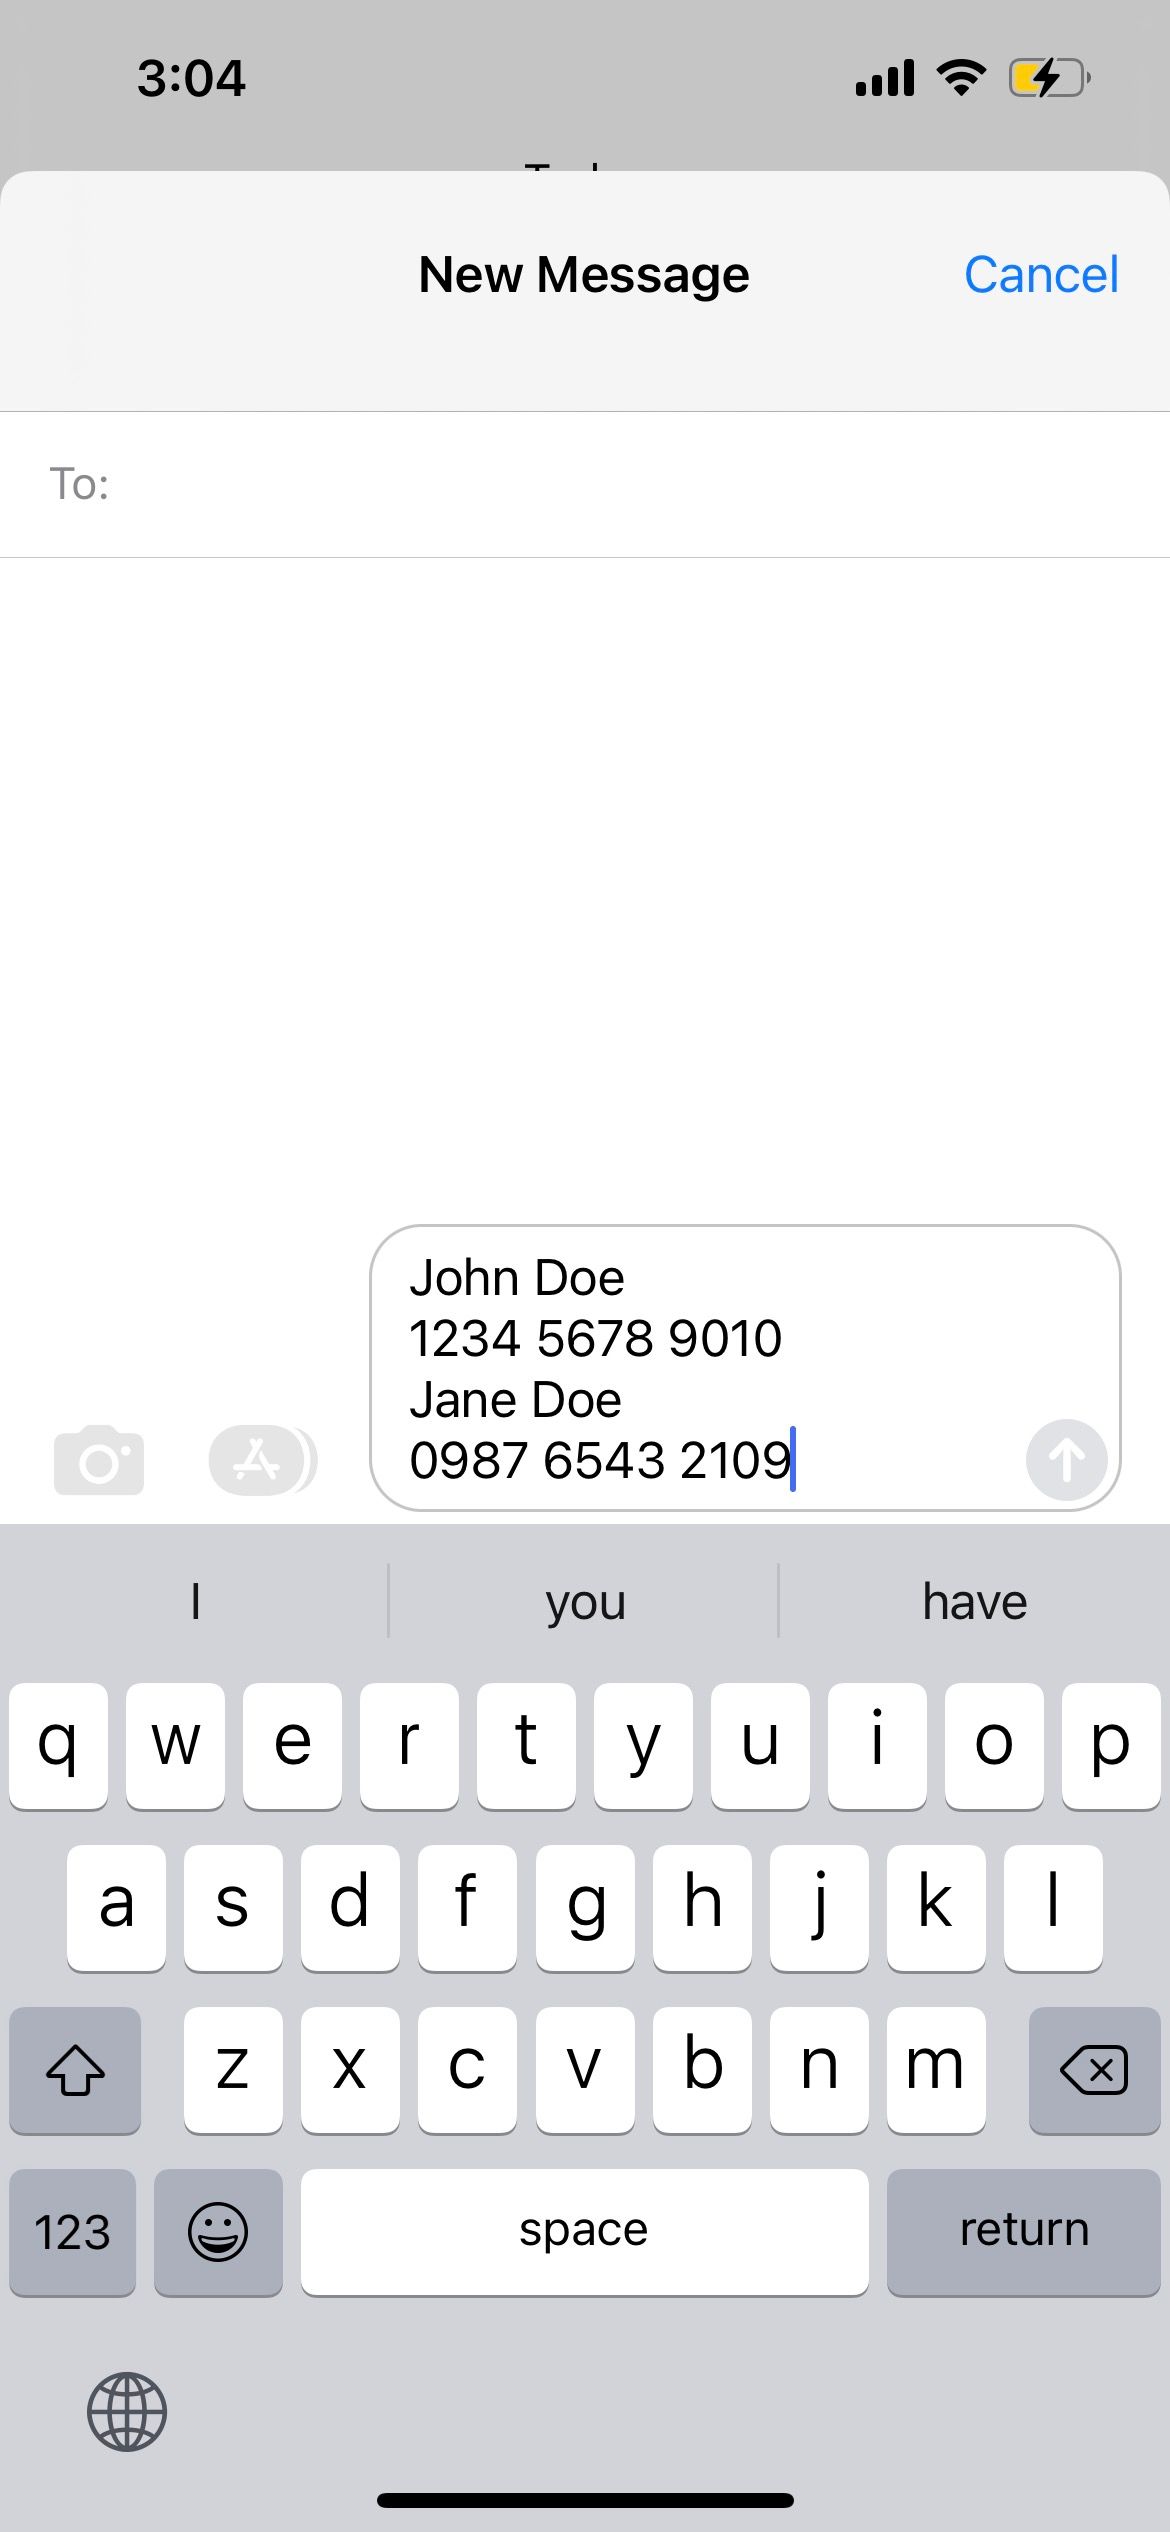 bagikan teks yang dipindai melalui aplikasi pesan iphone